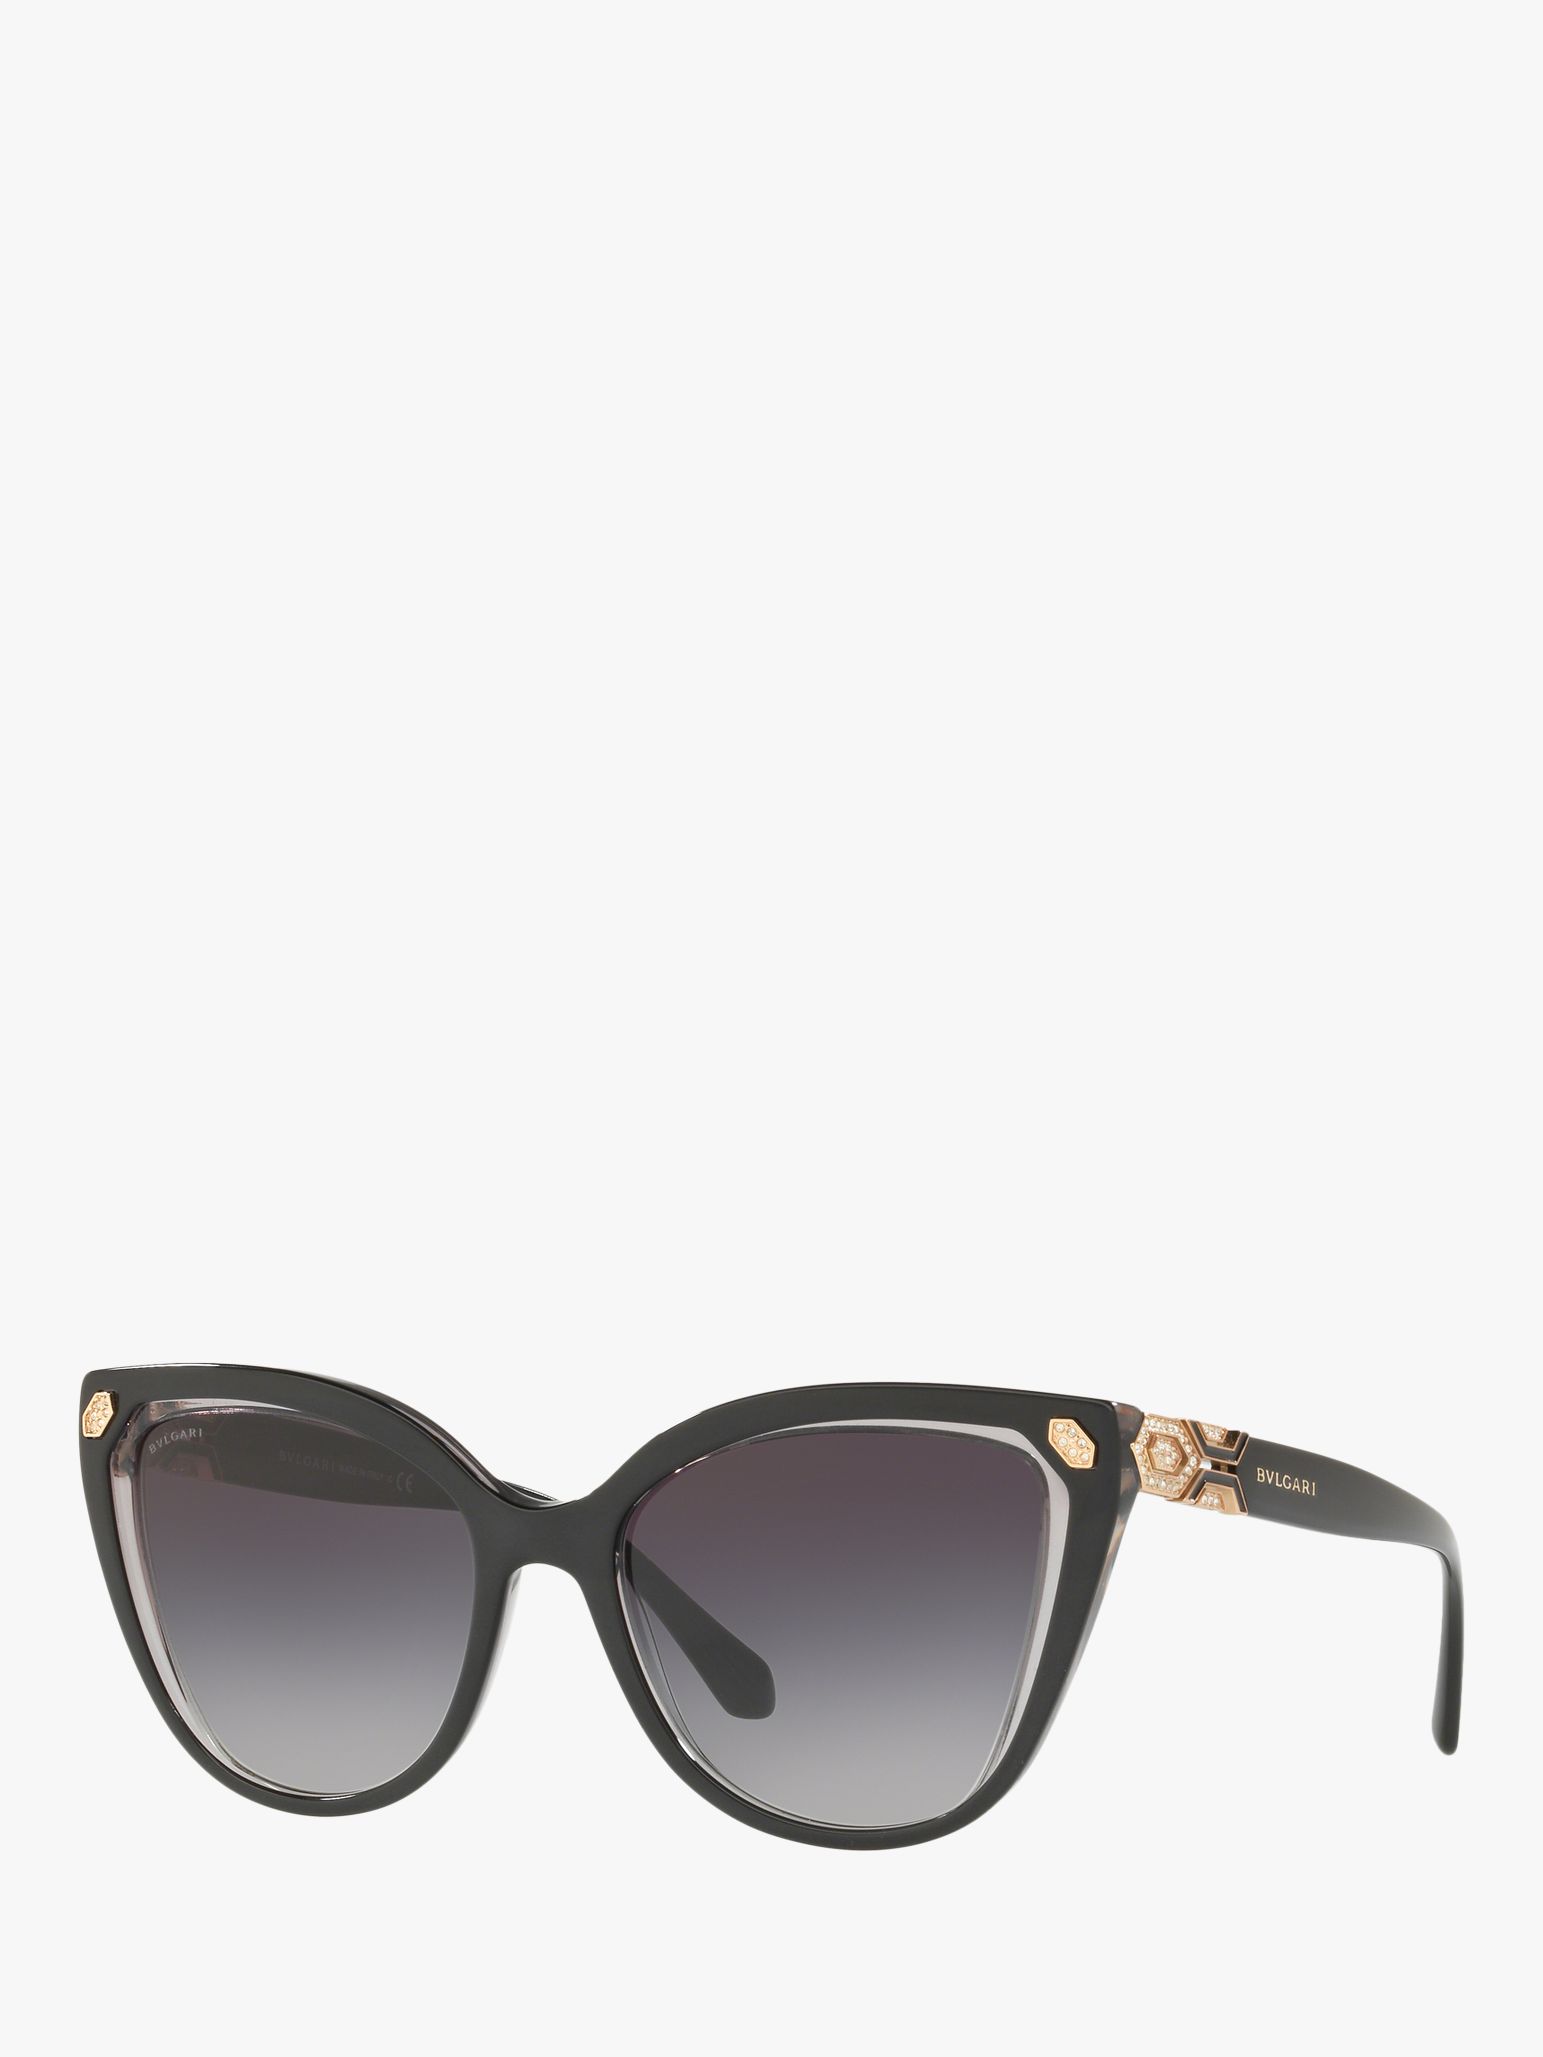 bvlgari sunglasses for women